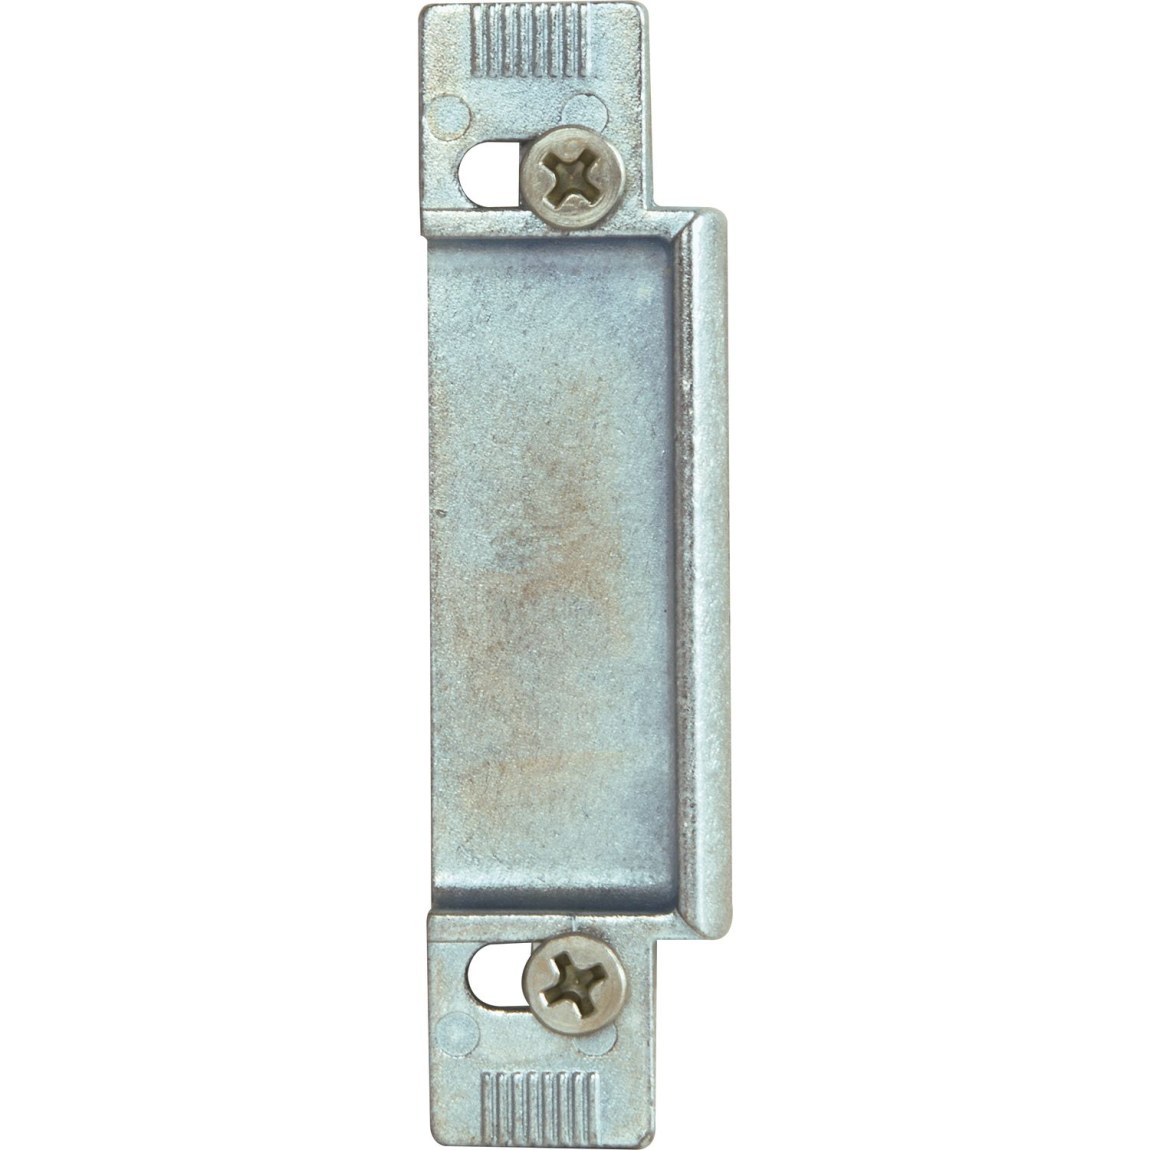 KFV výměnný kus 116, zinkový tlakový odlitek stříbrný, 8 mm - Zámky Lištové - vícebodové zámky Zámky lištové KFV Protiplechy pro zámky KFV